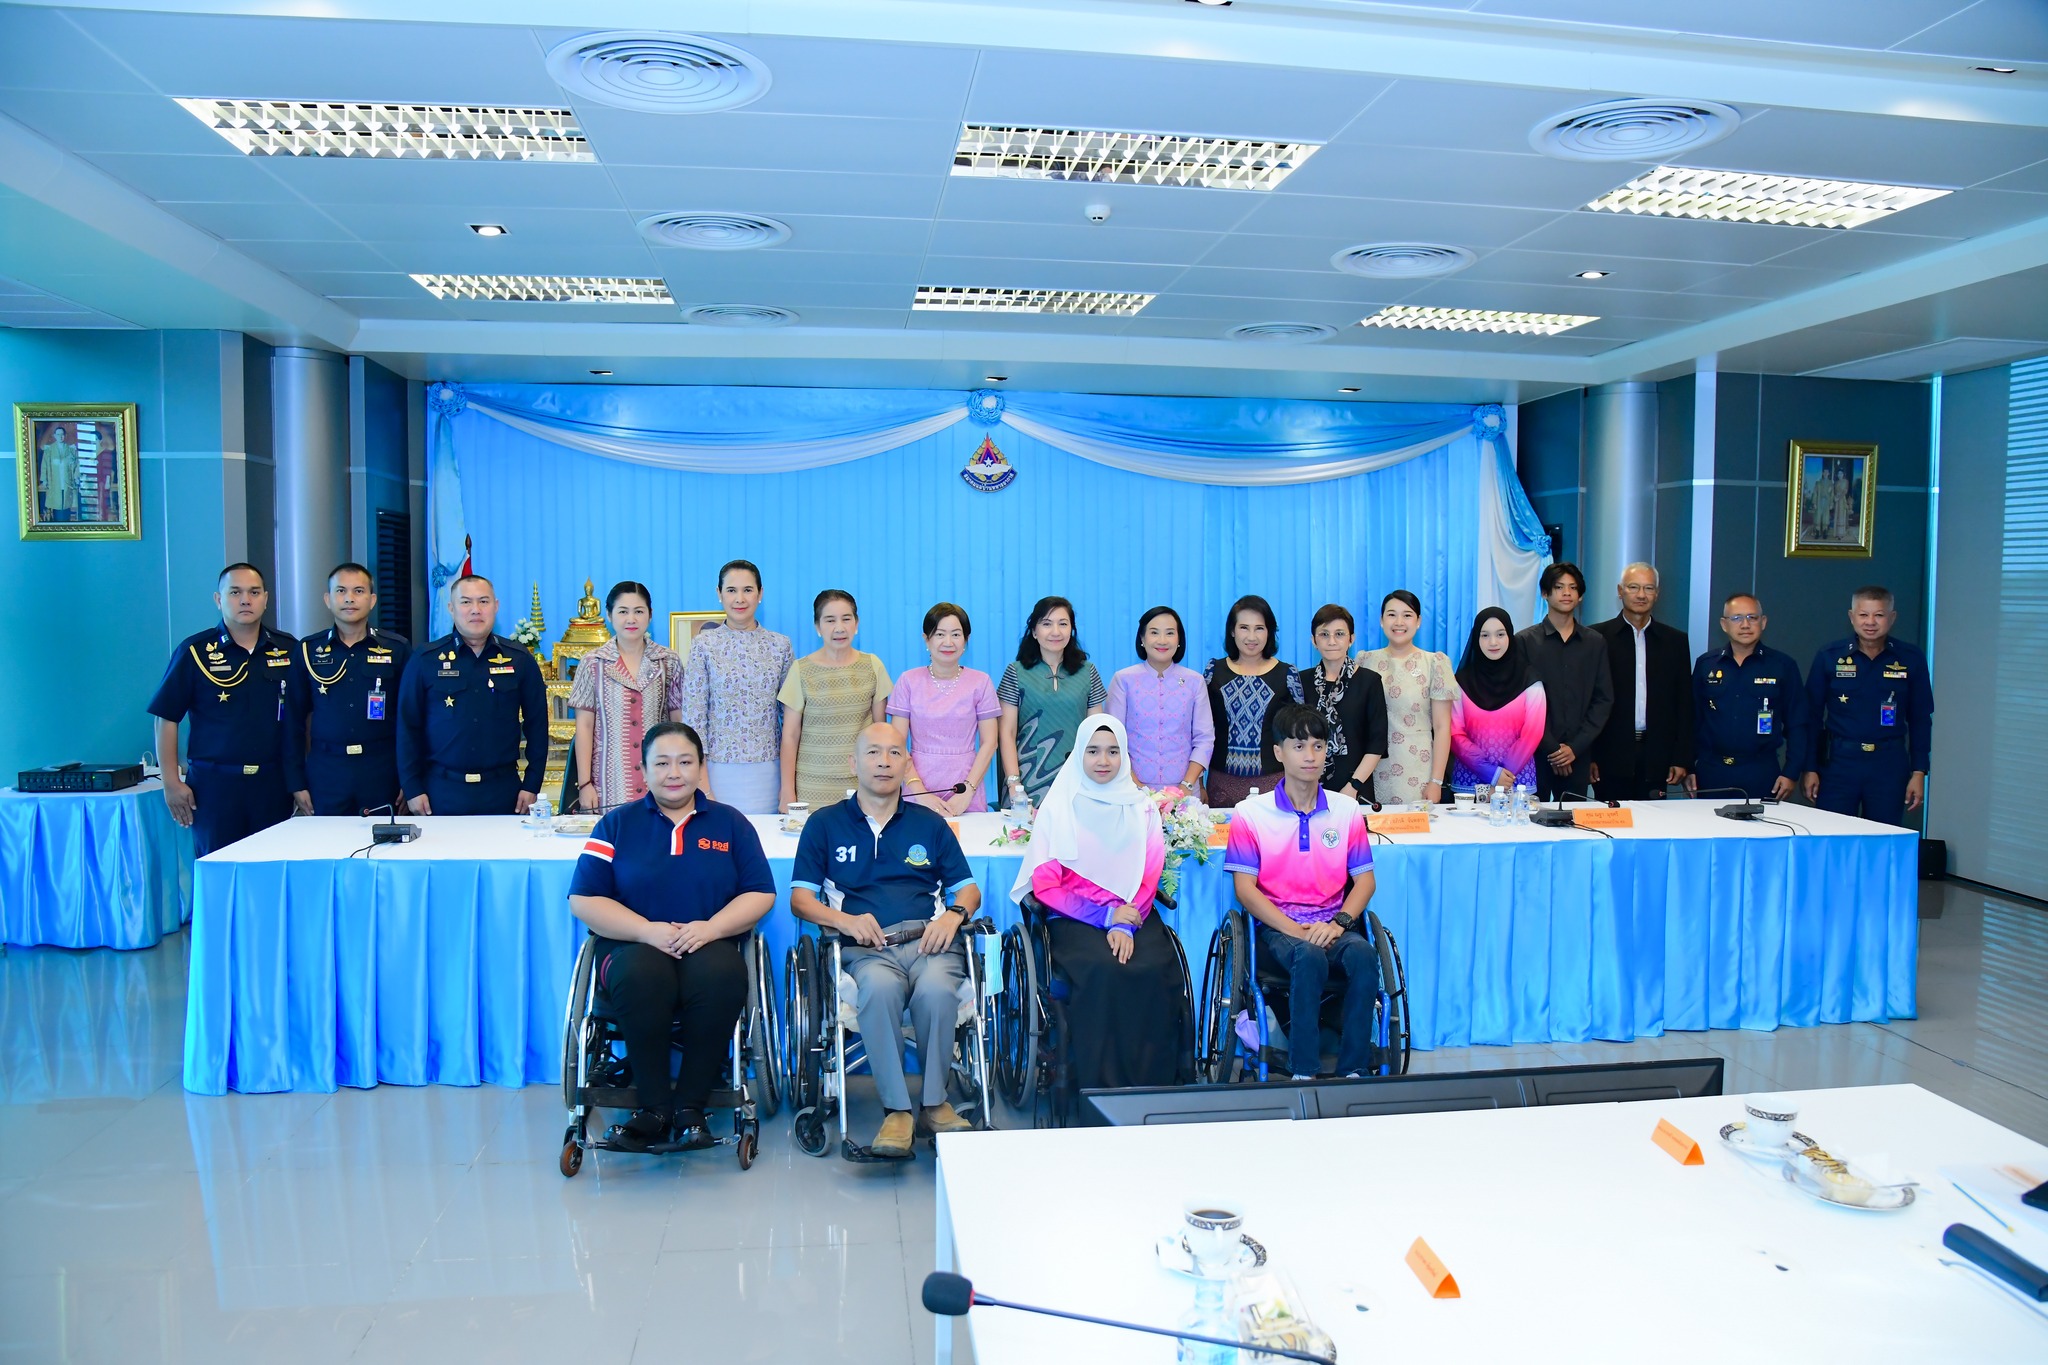 ประชุมหารือเพื่อดำเนินกิจกรรมโครงการ “แม่บ้านทัพฟ้าพัฒนาศักยภาพคนพิการ ปี 2567”